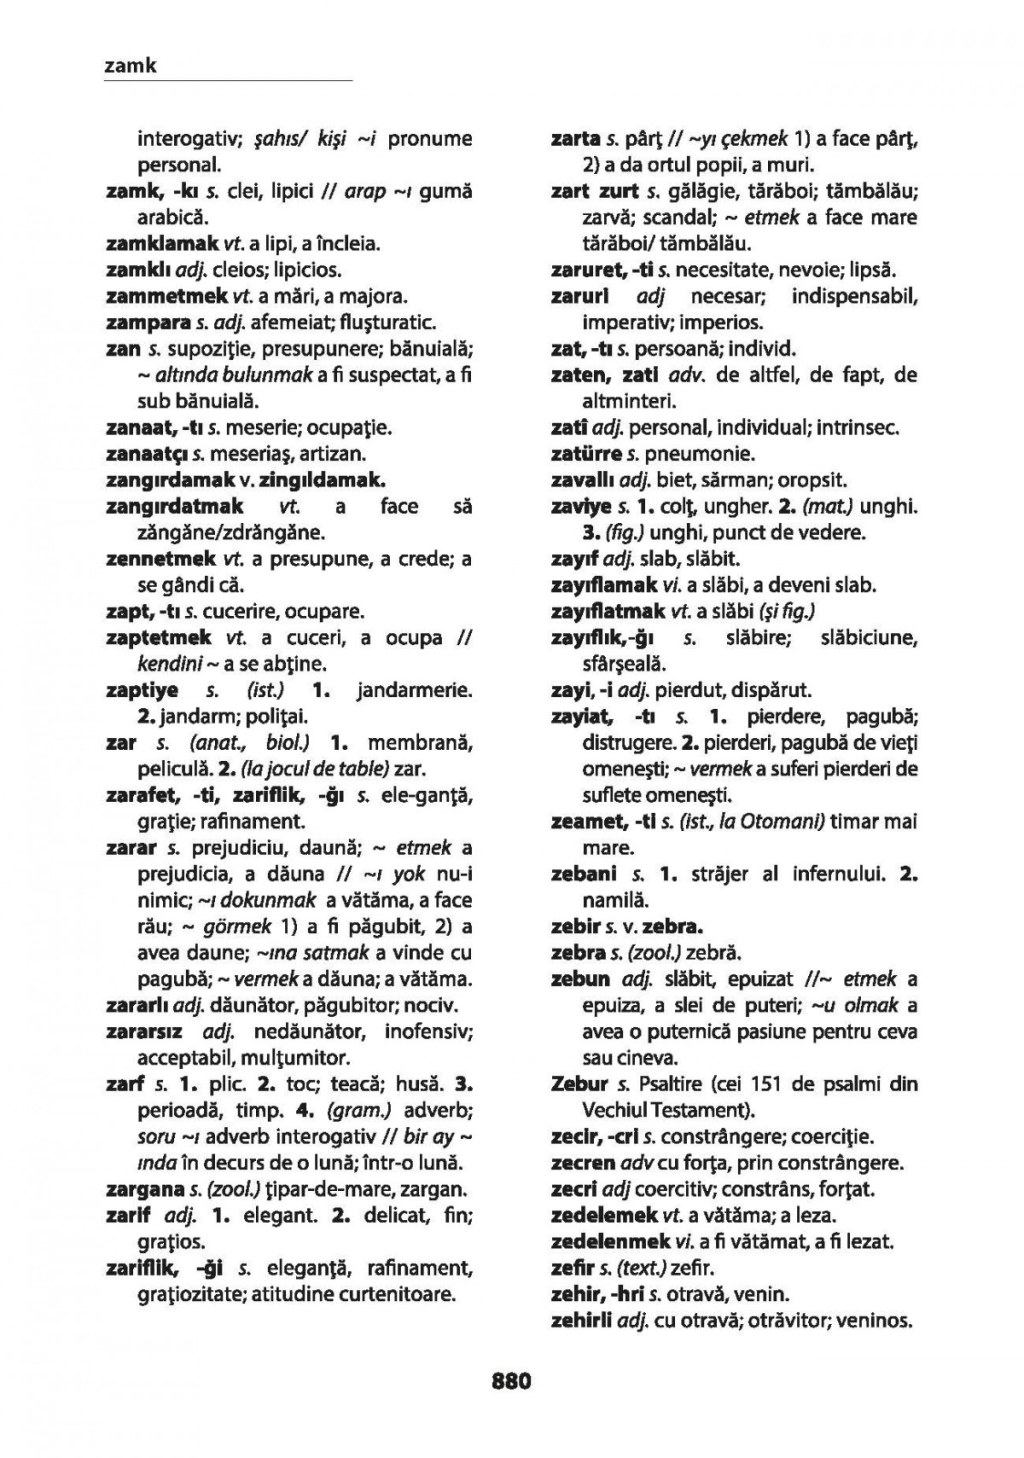 Picture of: Dictionar roman-turc, turc-roman / Romence – turkce, turkce